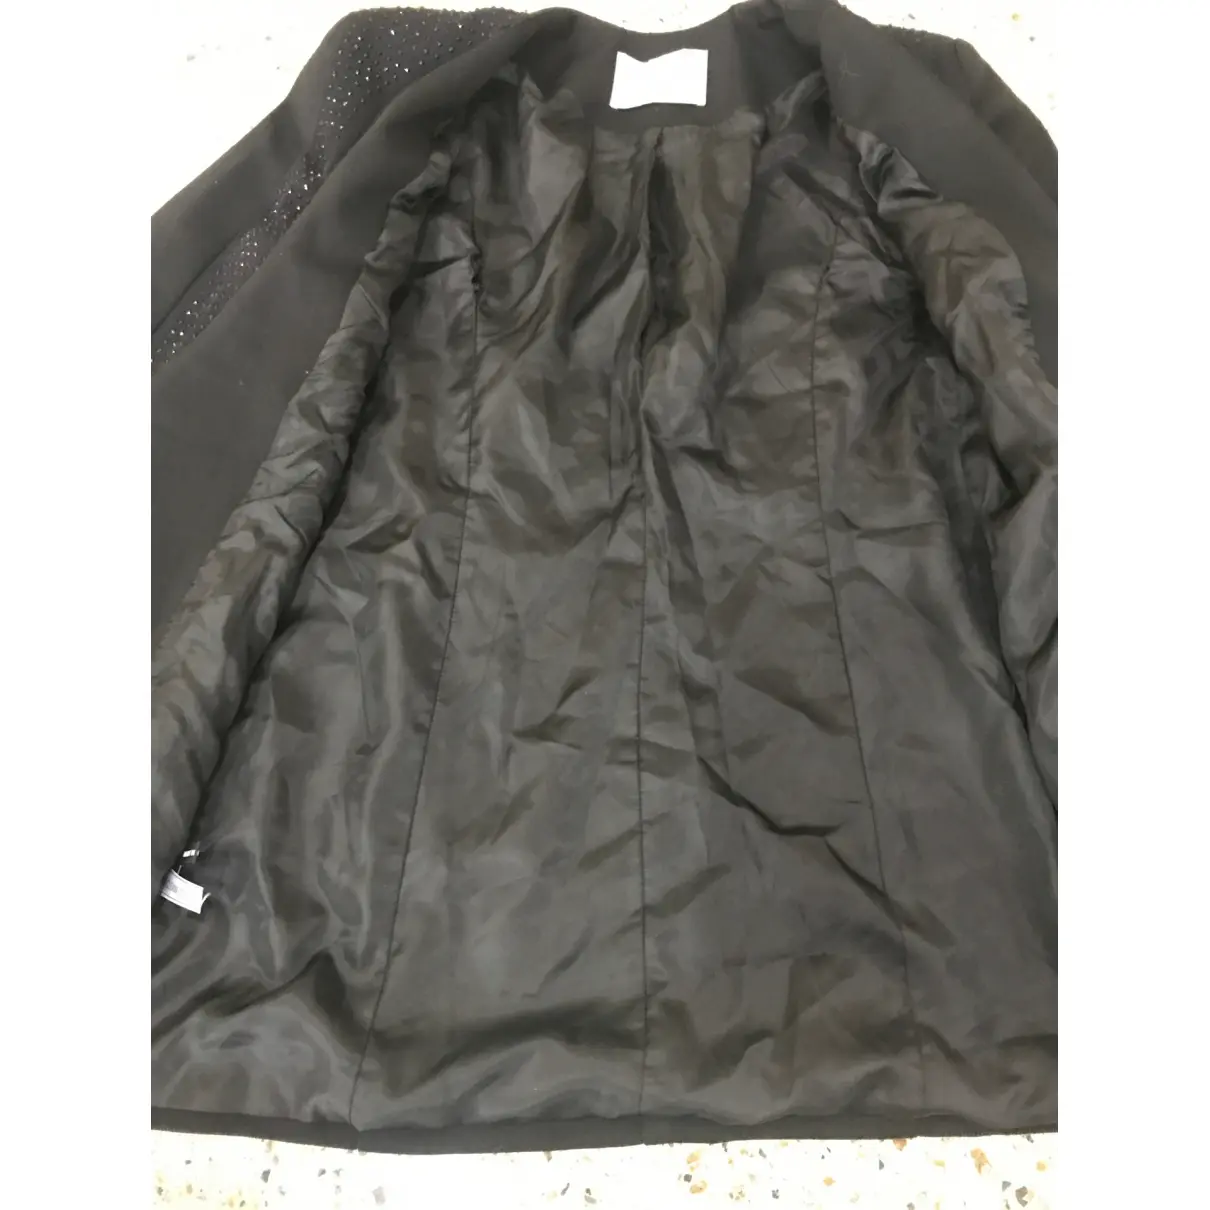 Buy Lungta De Fancy Jacket online